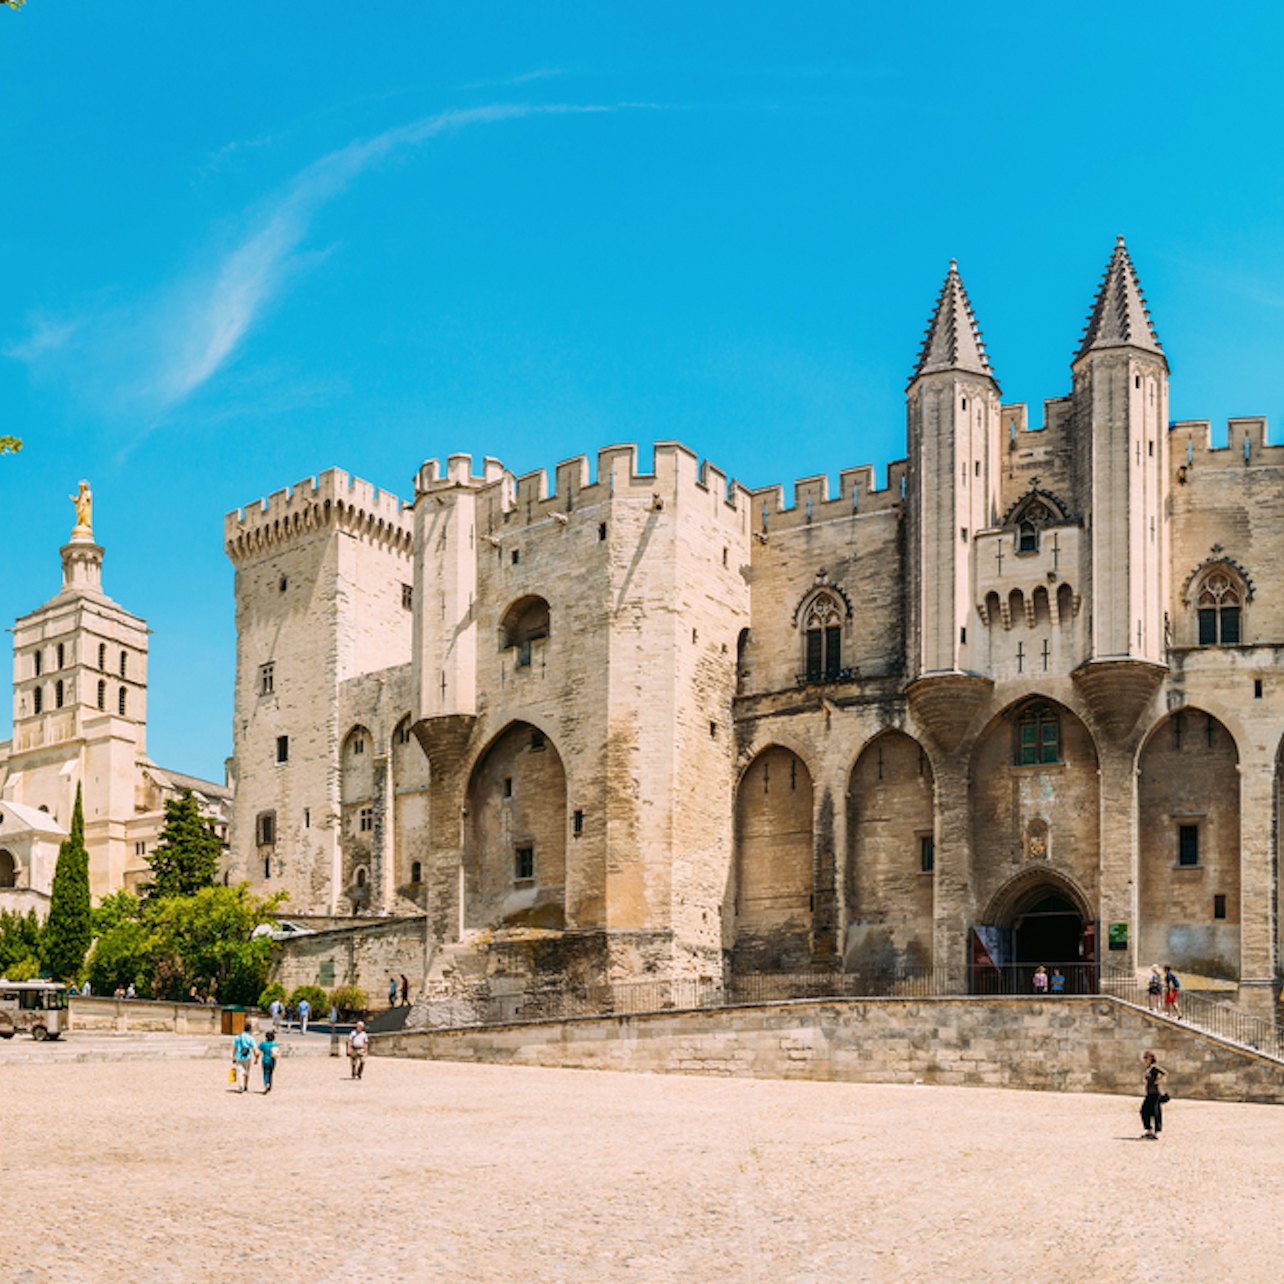 Palais des Papes & Pont d'Avignon - Accommodations in Avignon